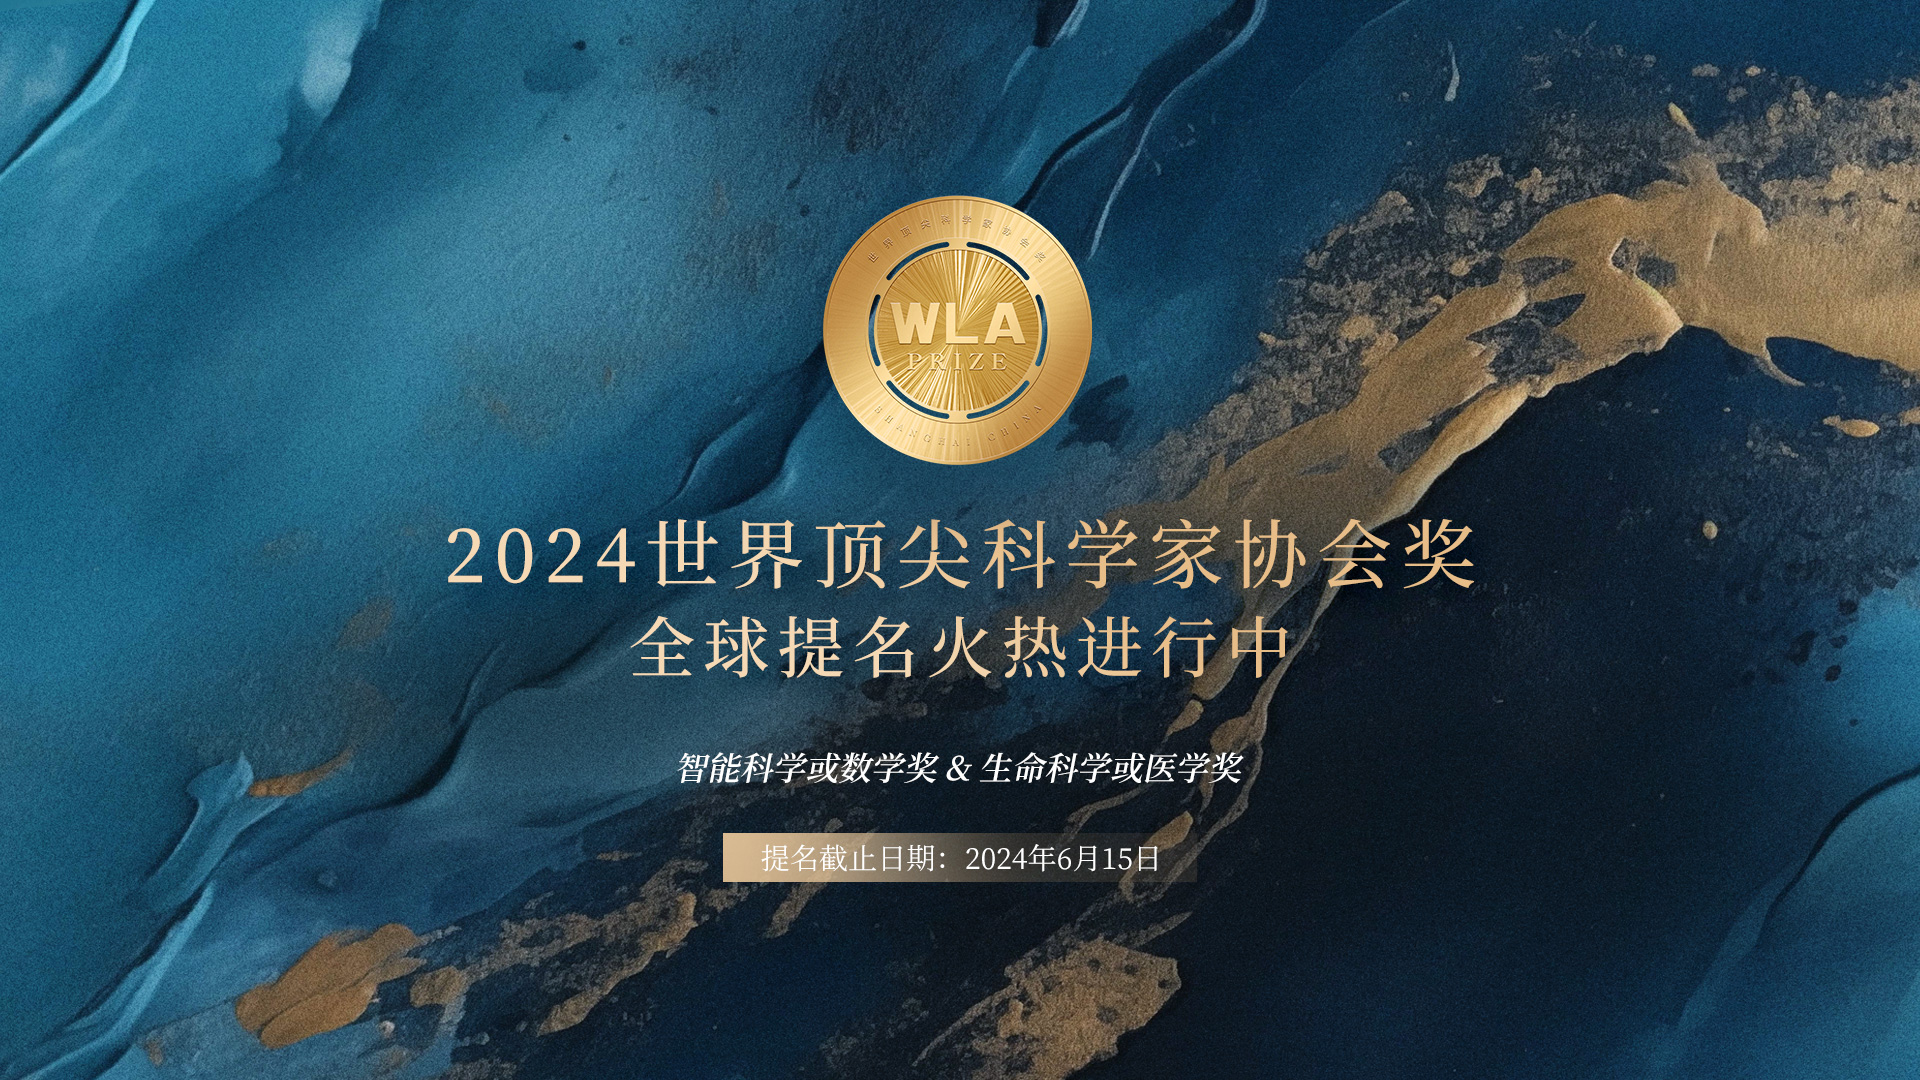 2024世界顶尖科学家协会奖正式开启全球提名